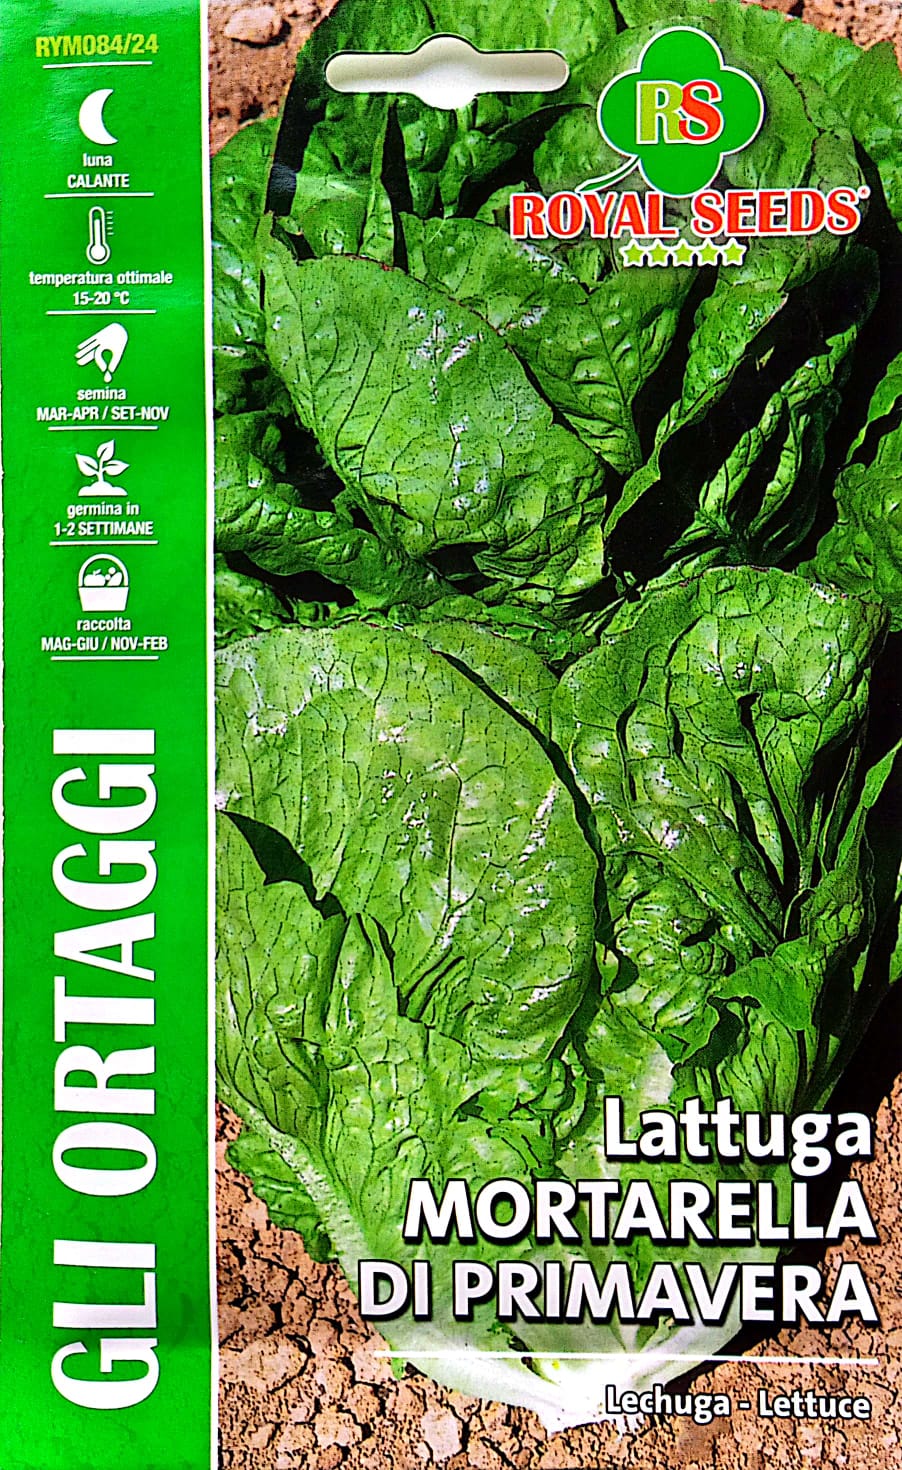 Royal Lettuce Mortarella Di Primavera